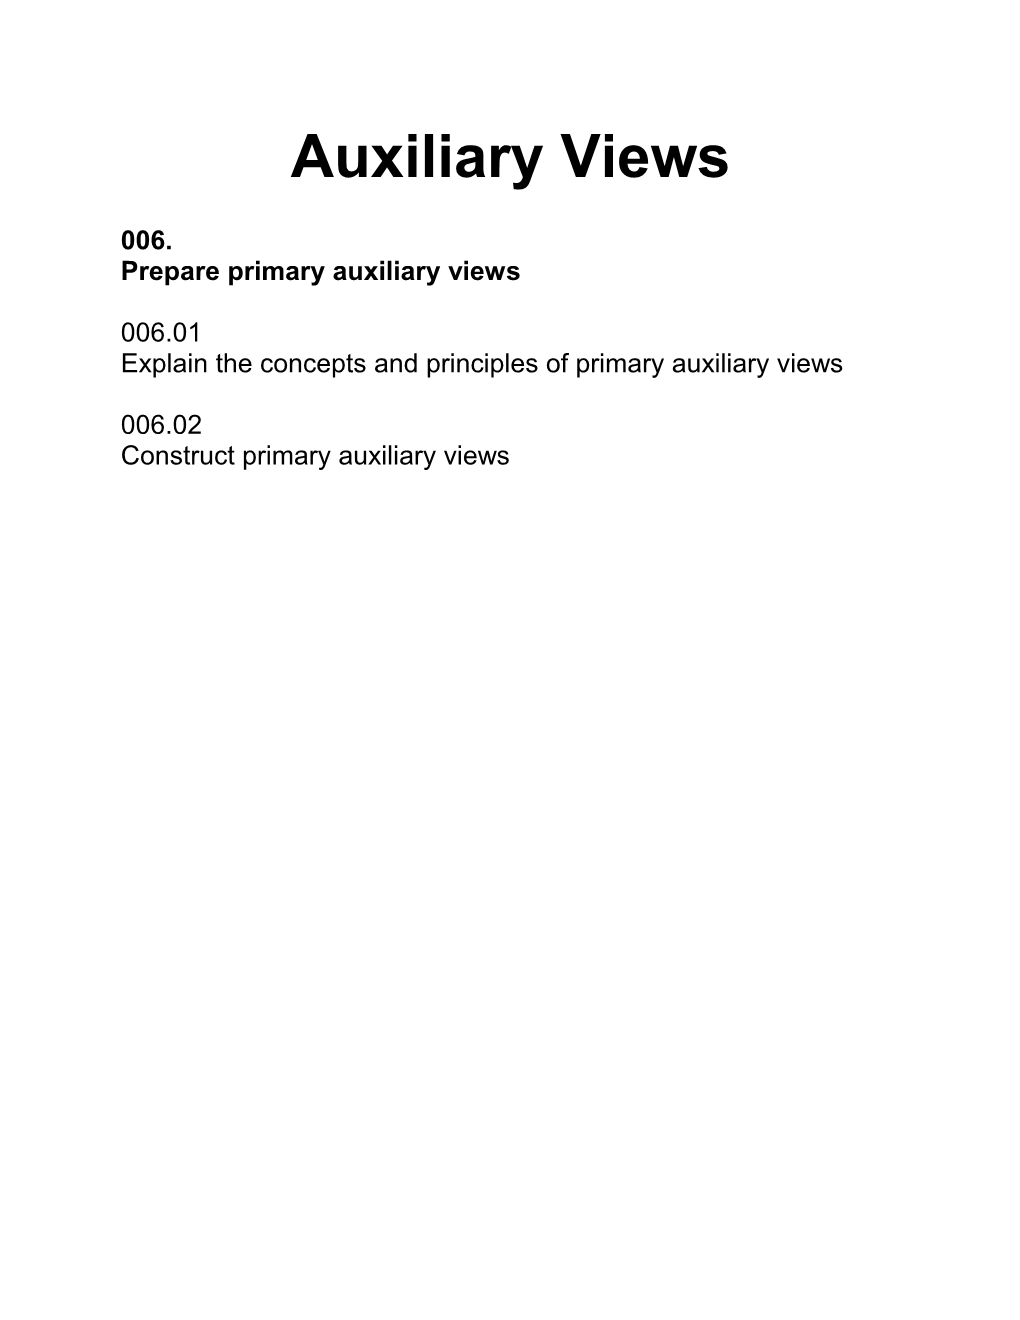 Prepare Primary Auxiliary Views